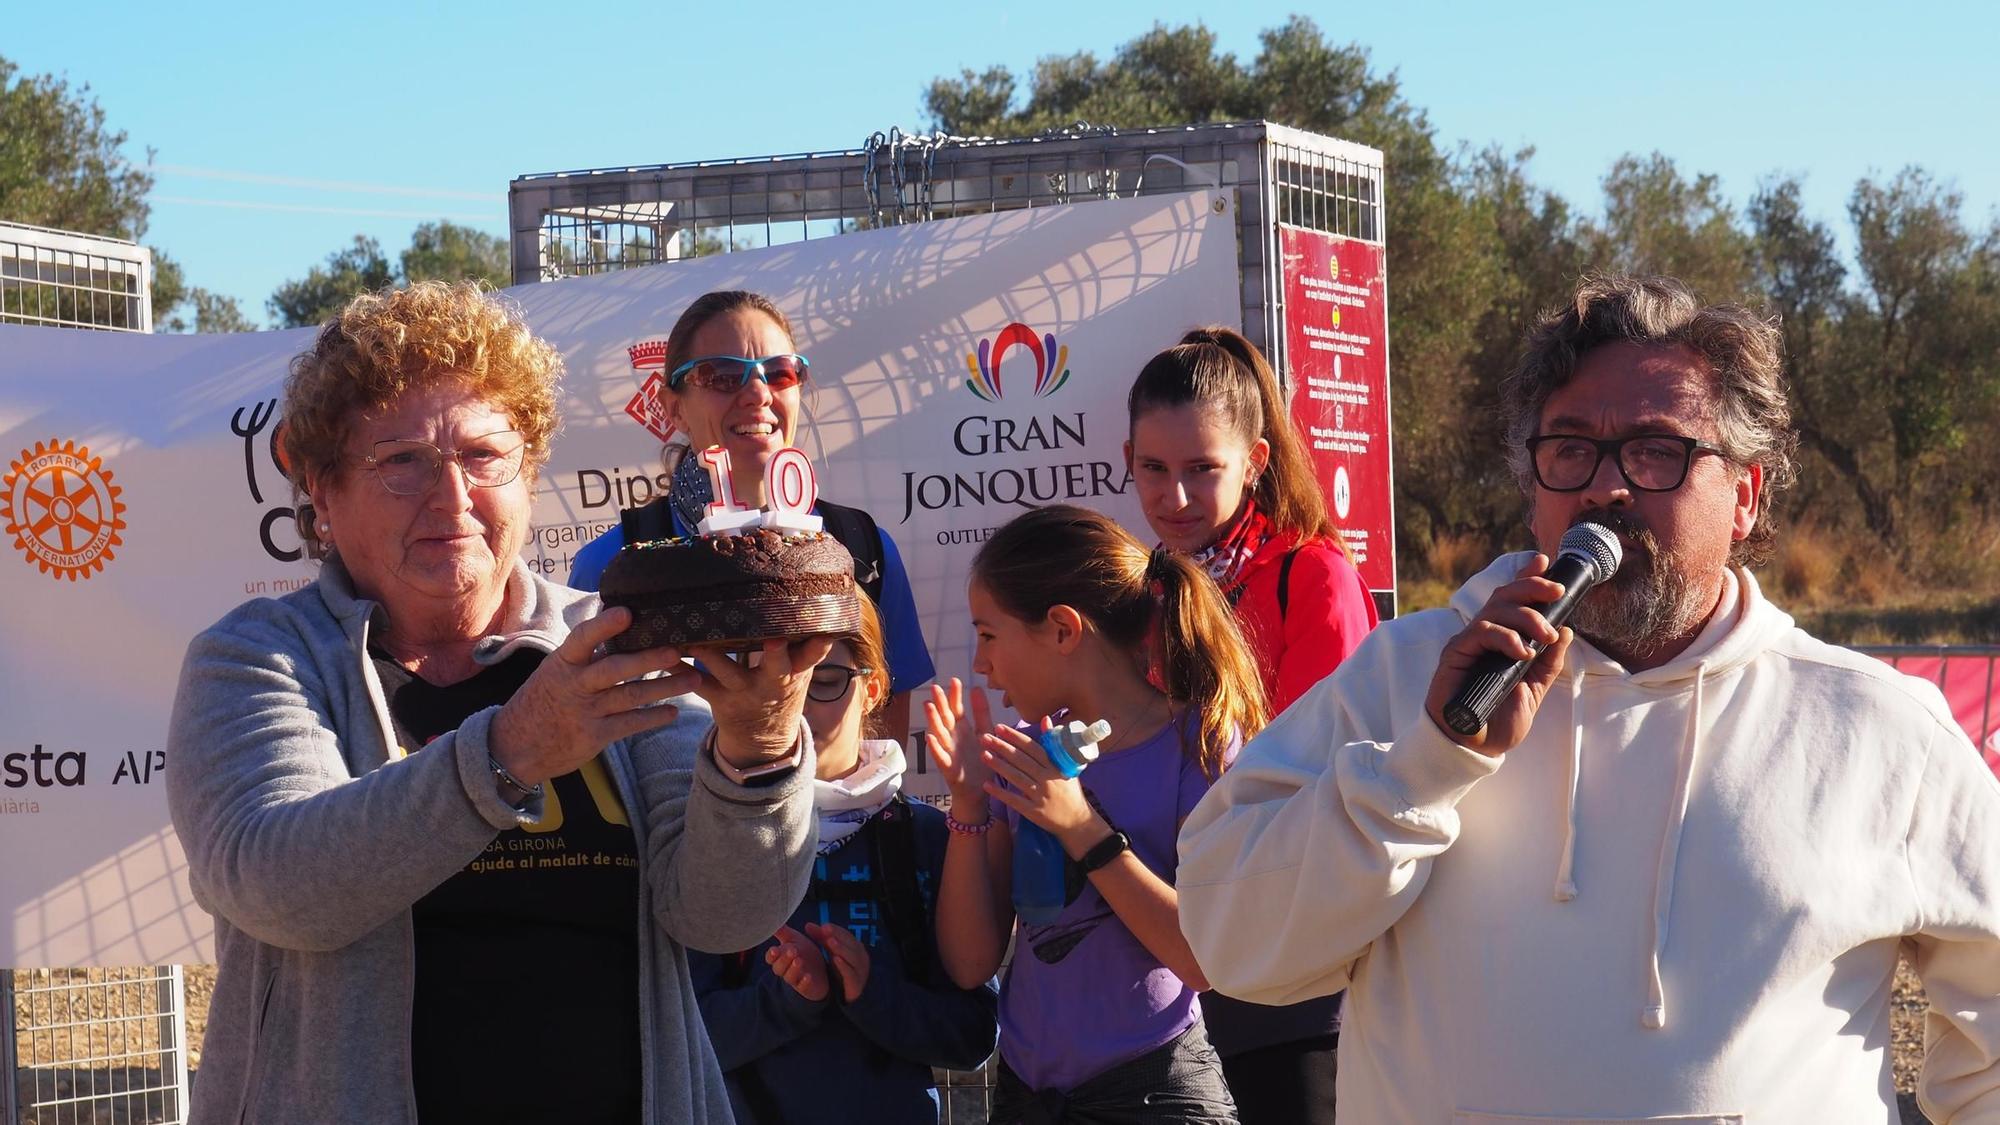 Galeria d'imatges: Les millors fotos de la cursa solidària de l'Oncolliga a les comarques gironines